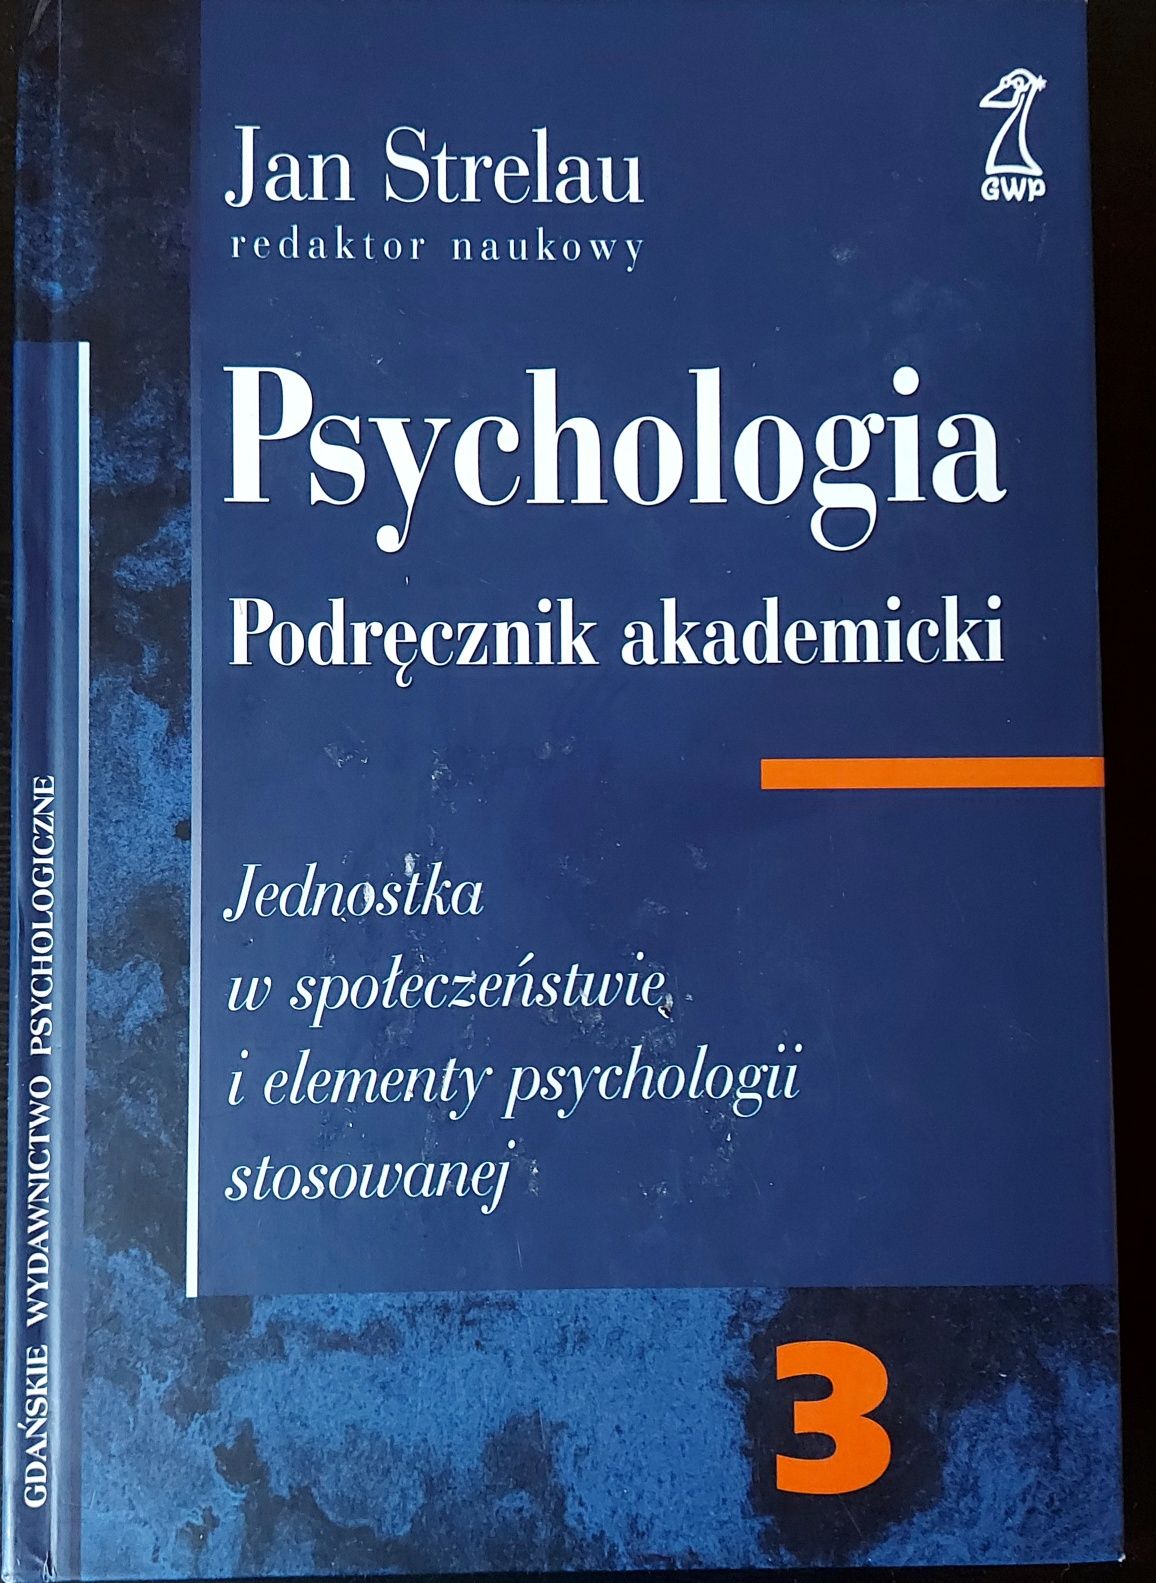 Psychologia podręcznik akademicki Jan Strelau tom 3